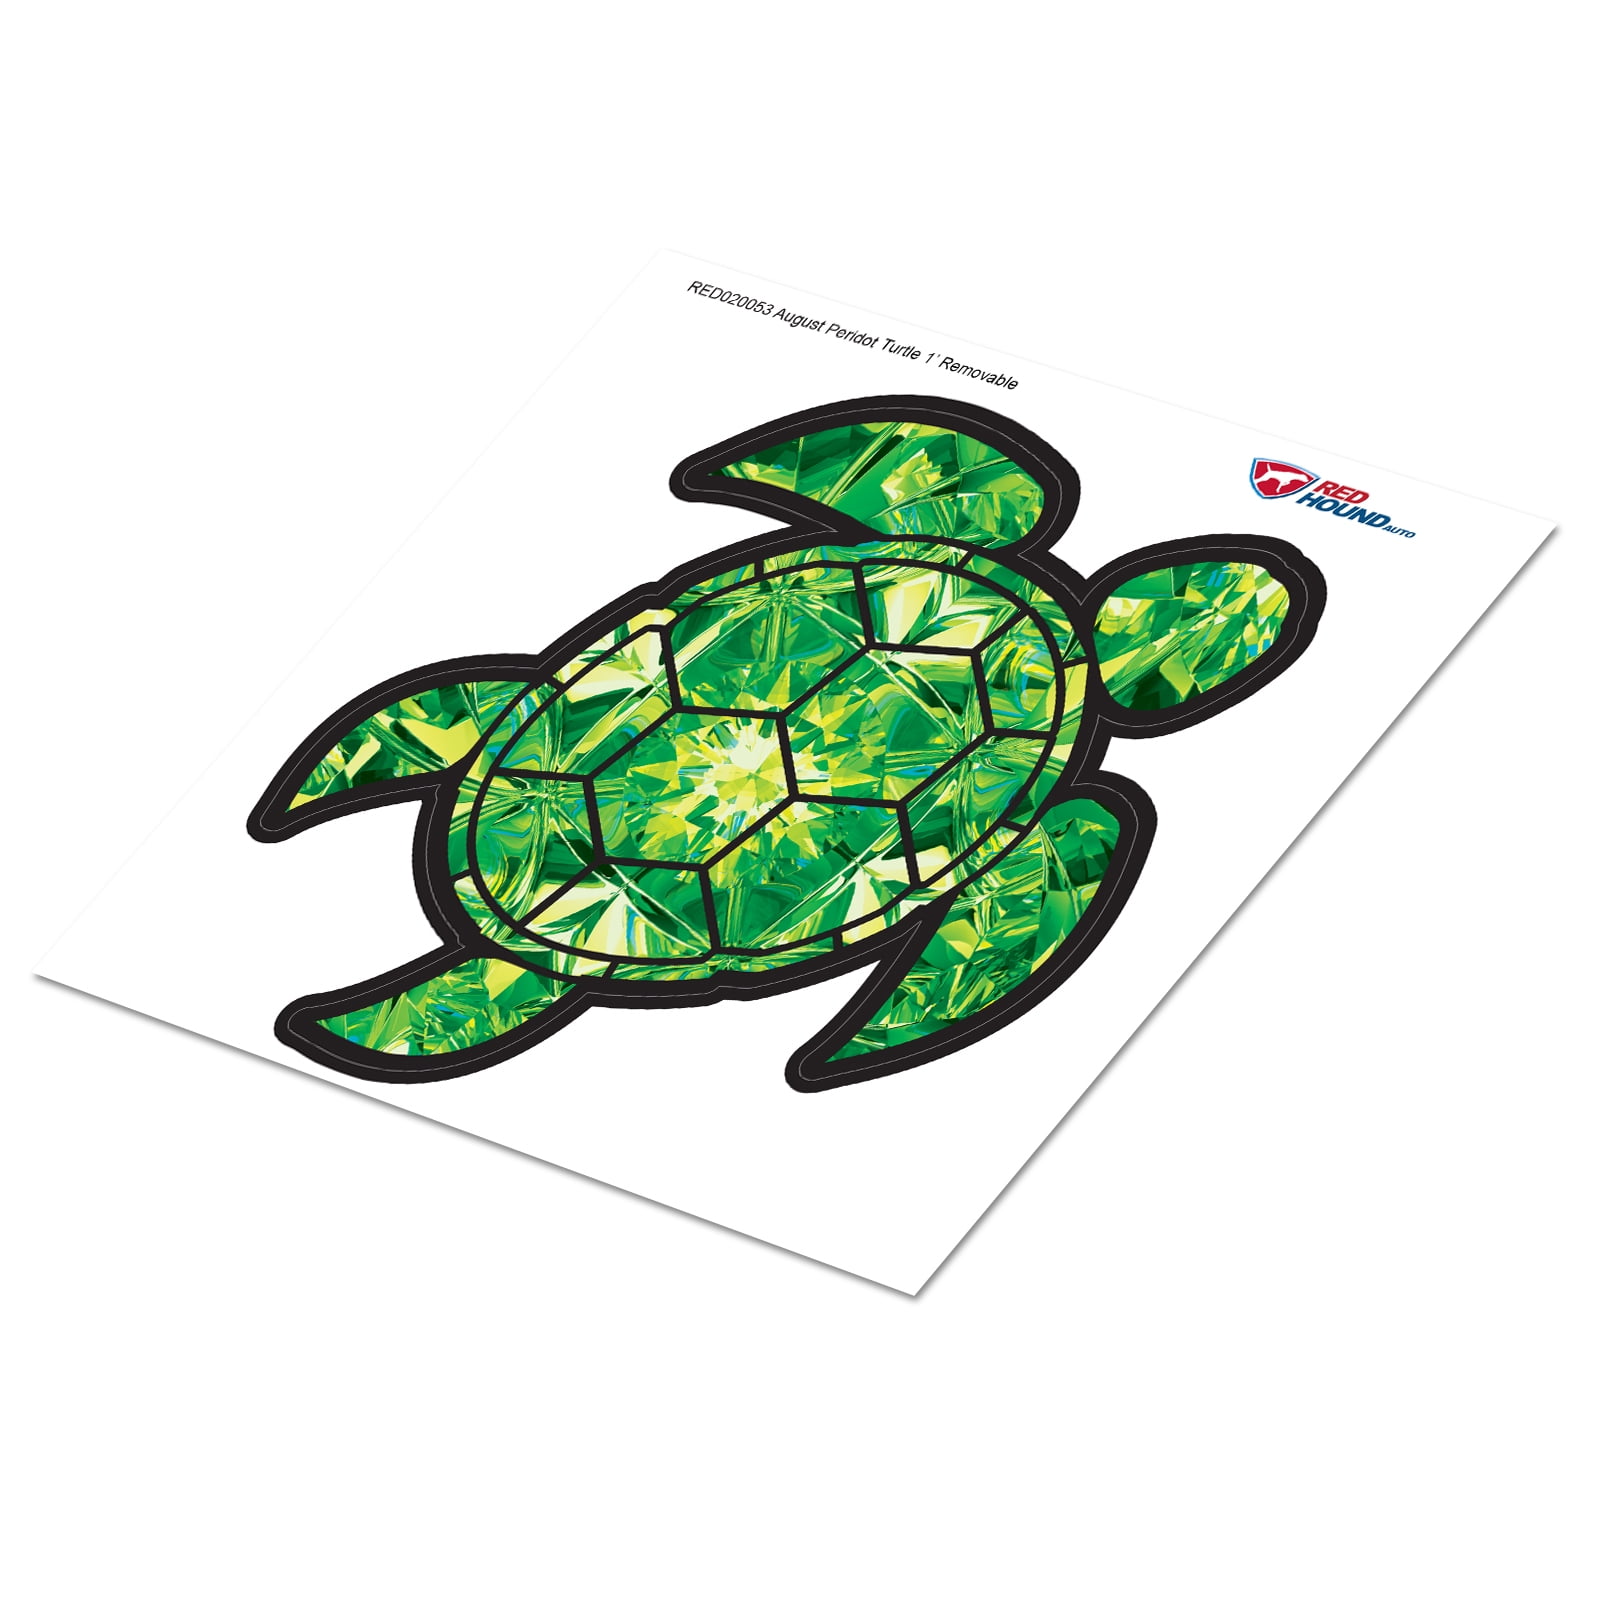 Gem Peridot Sea Turtle Decal August Vinyl Water & Fade Resistant 2.5 in 